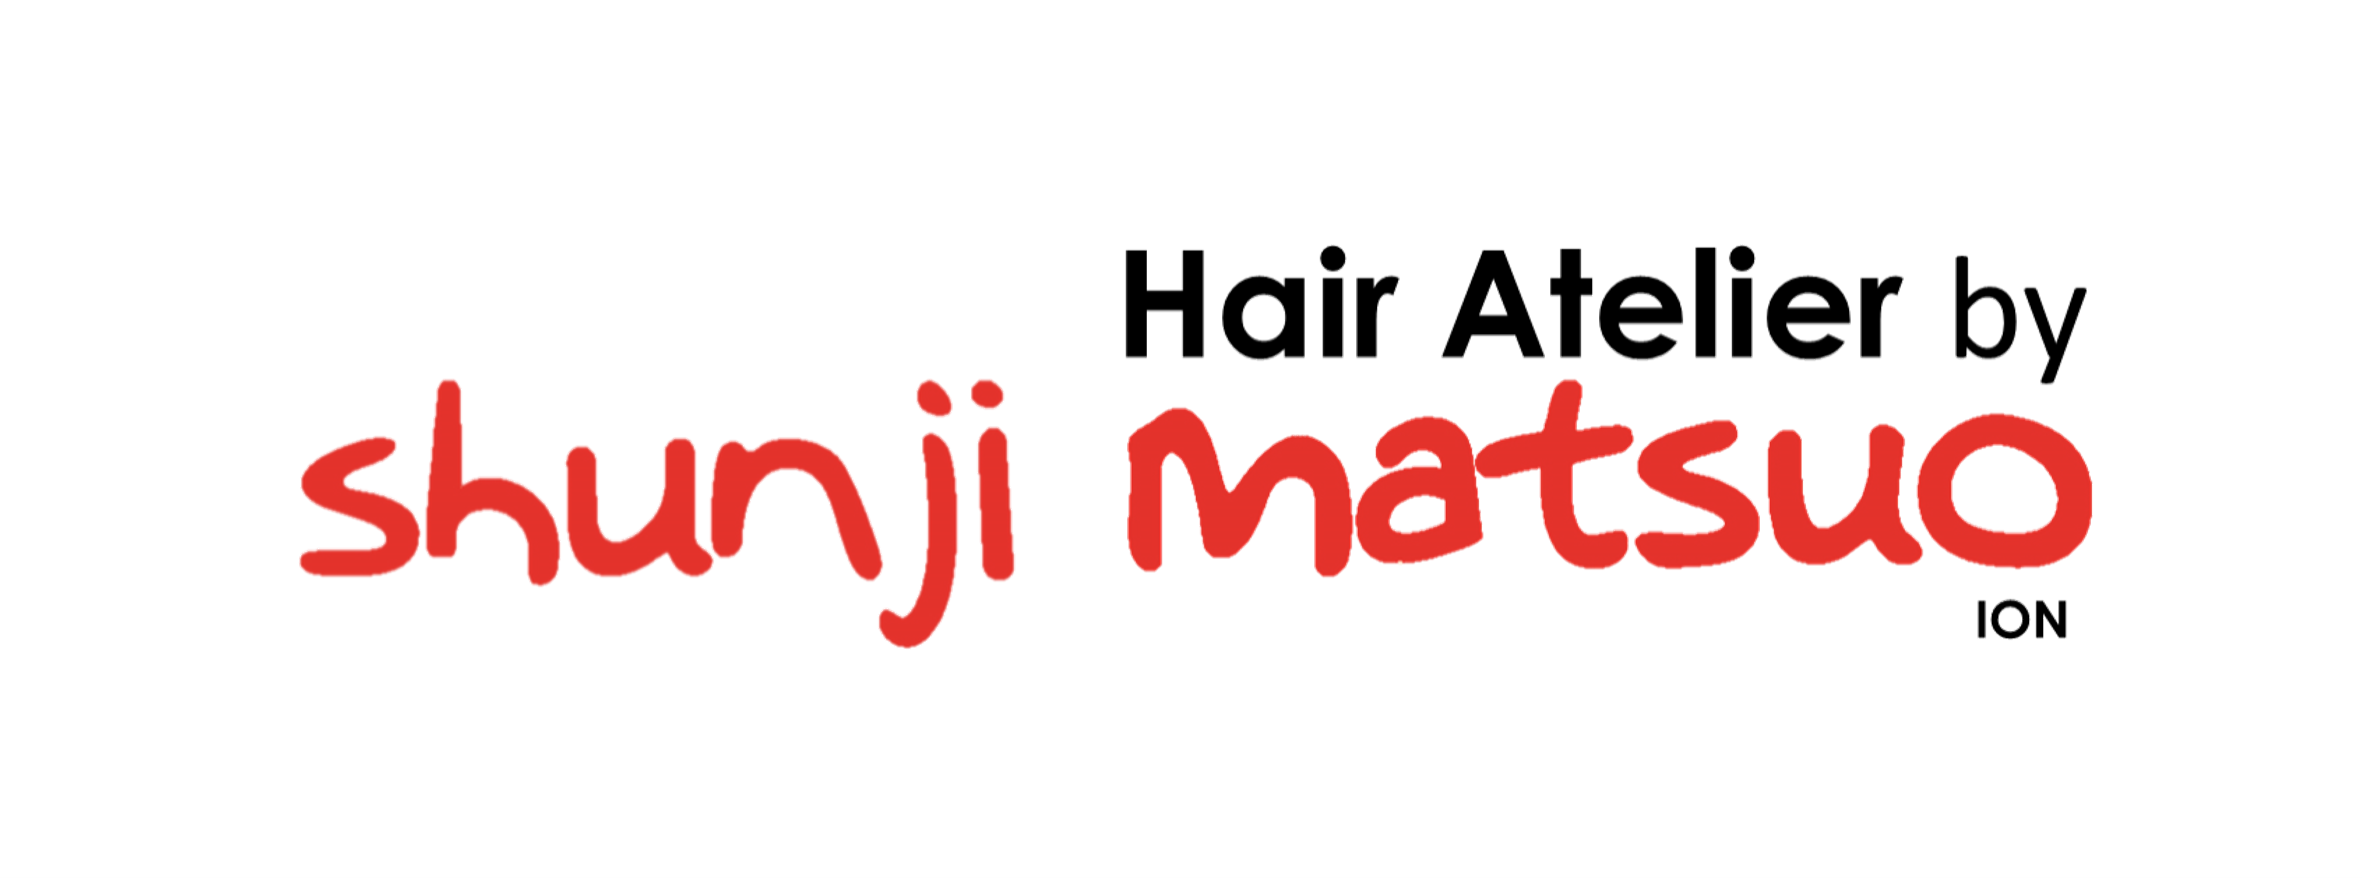 HAIR ATELIER BY SHUNJI MATSUO ION